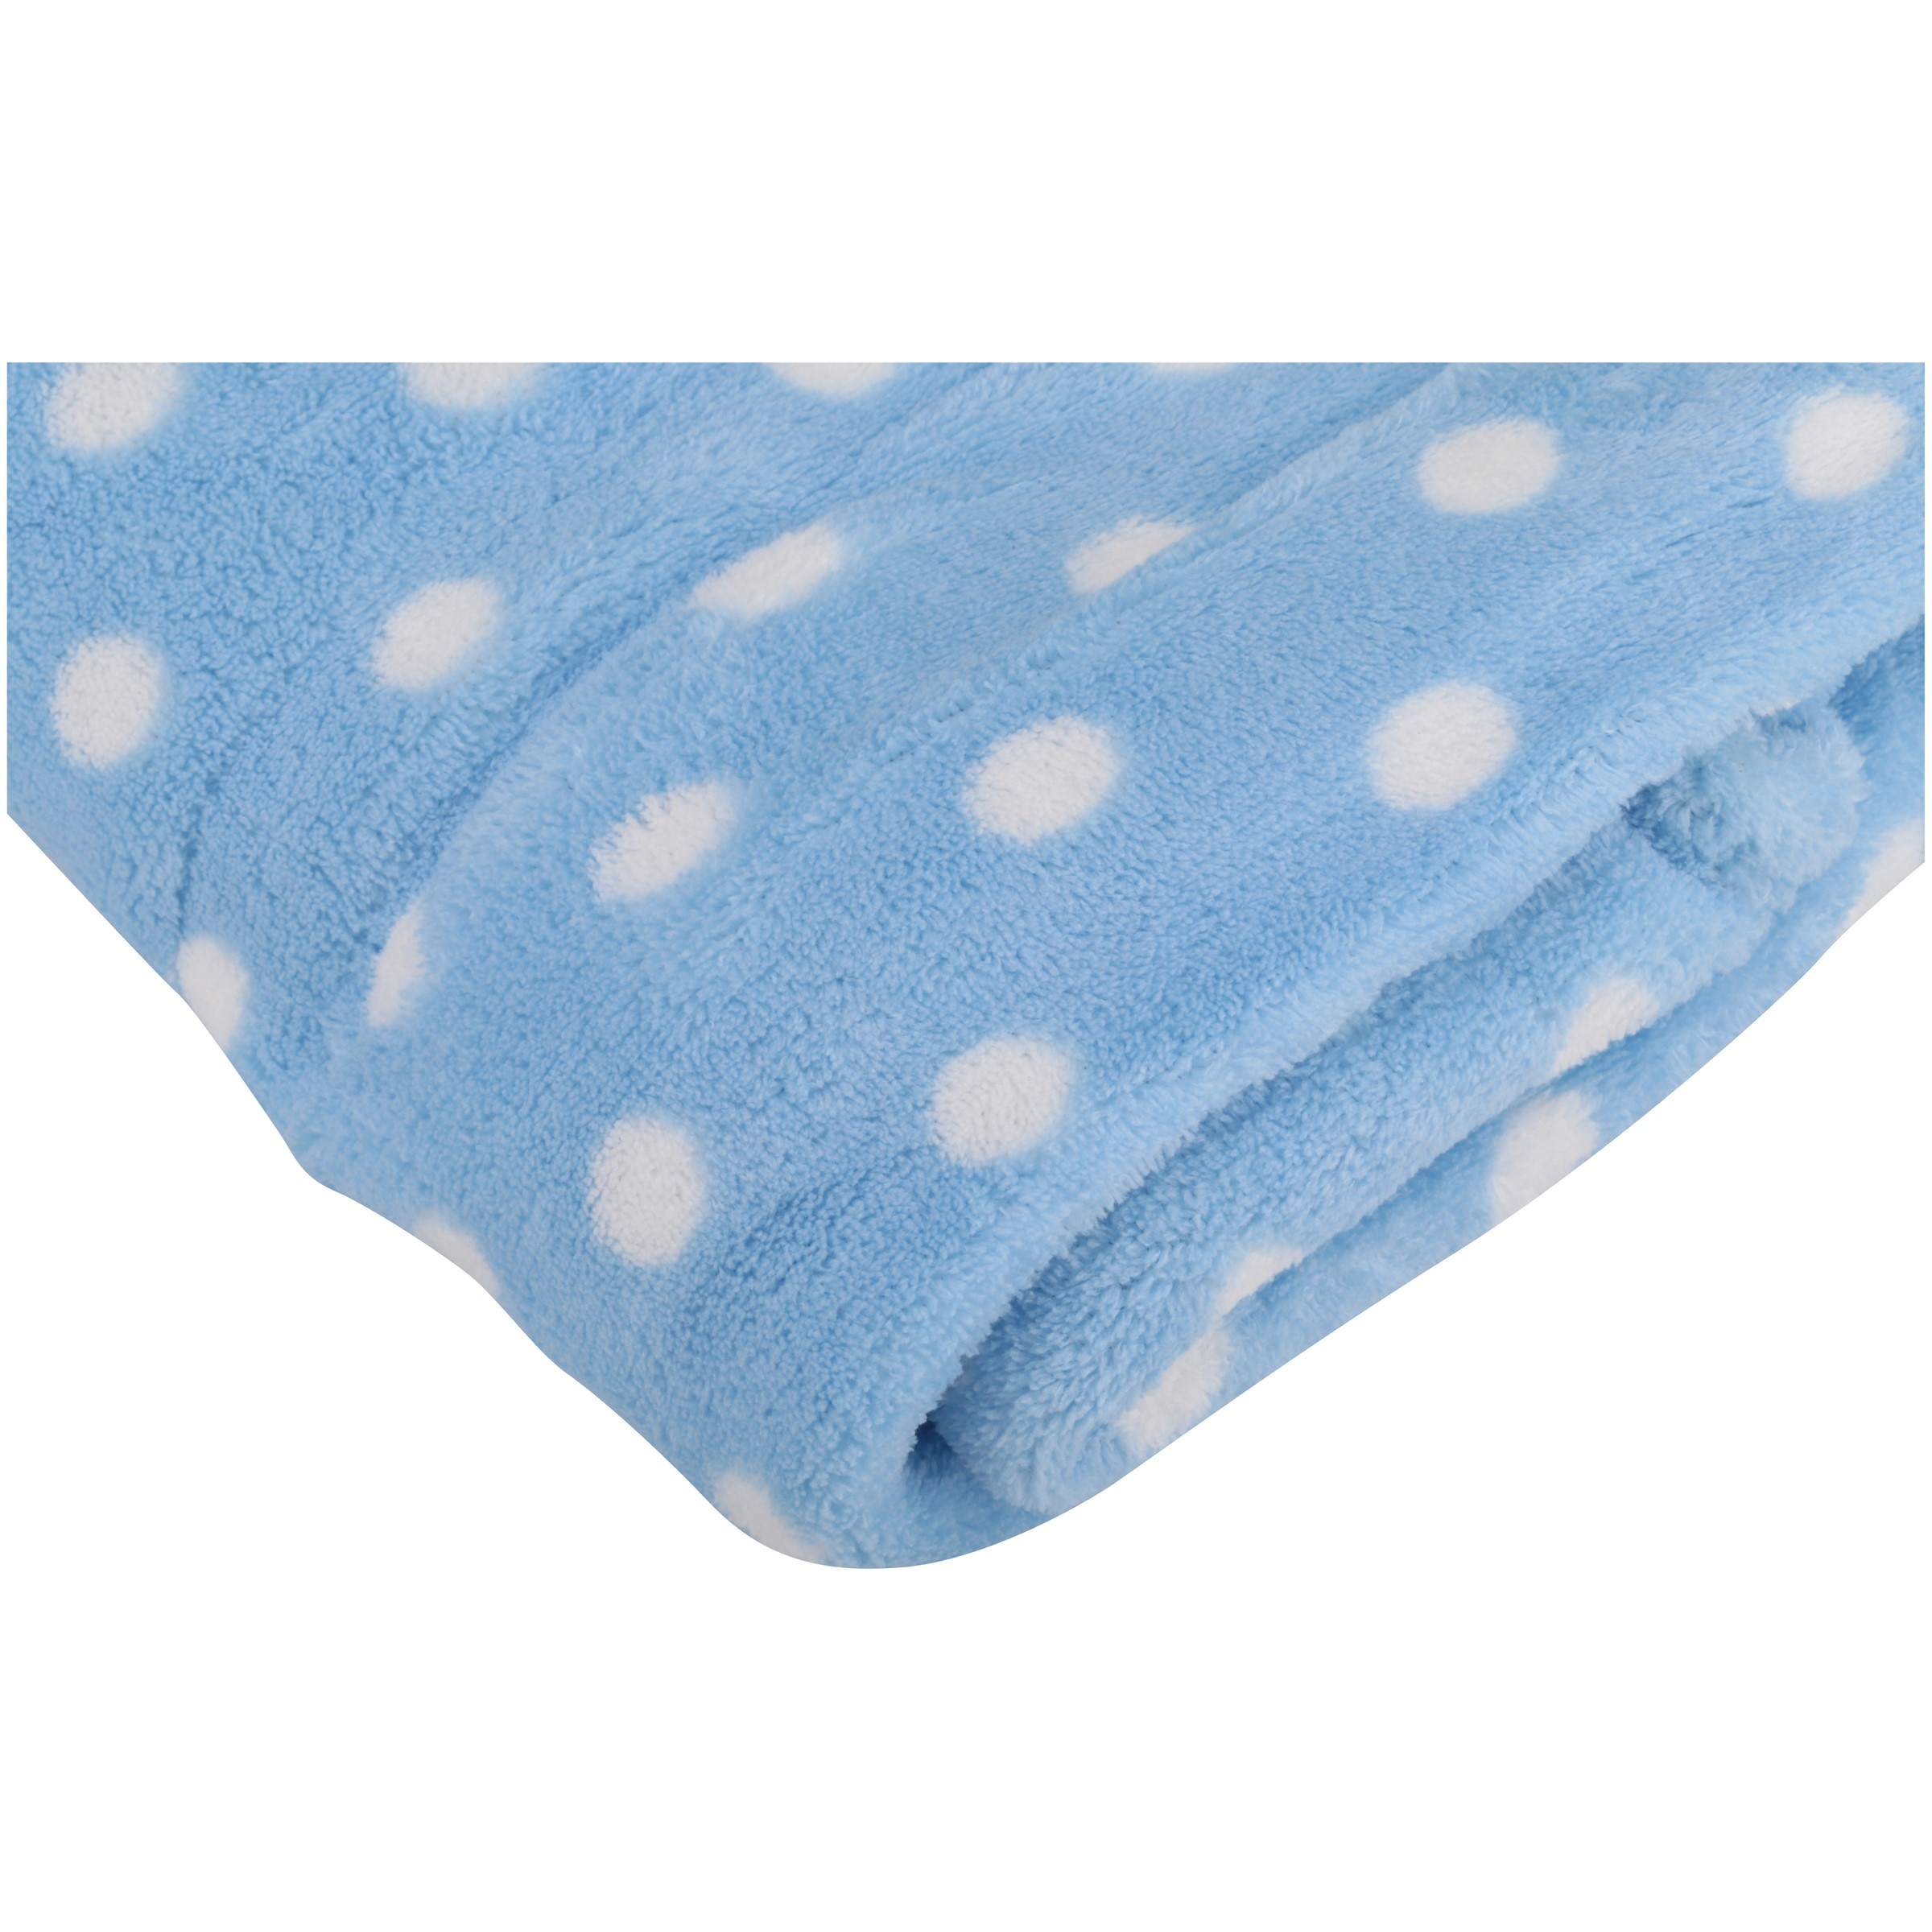 Little Starter Male Blue Polka Dot Polyester Blanket for Baby's - image 1 of 4